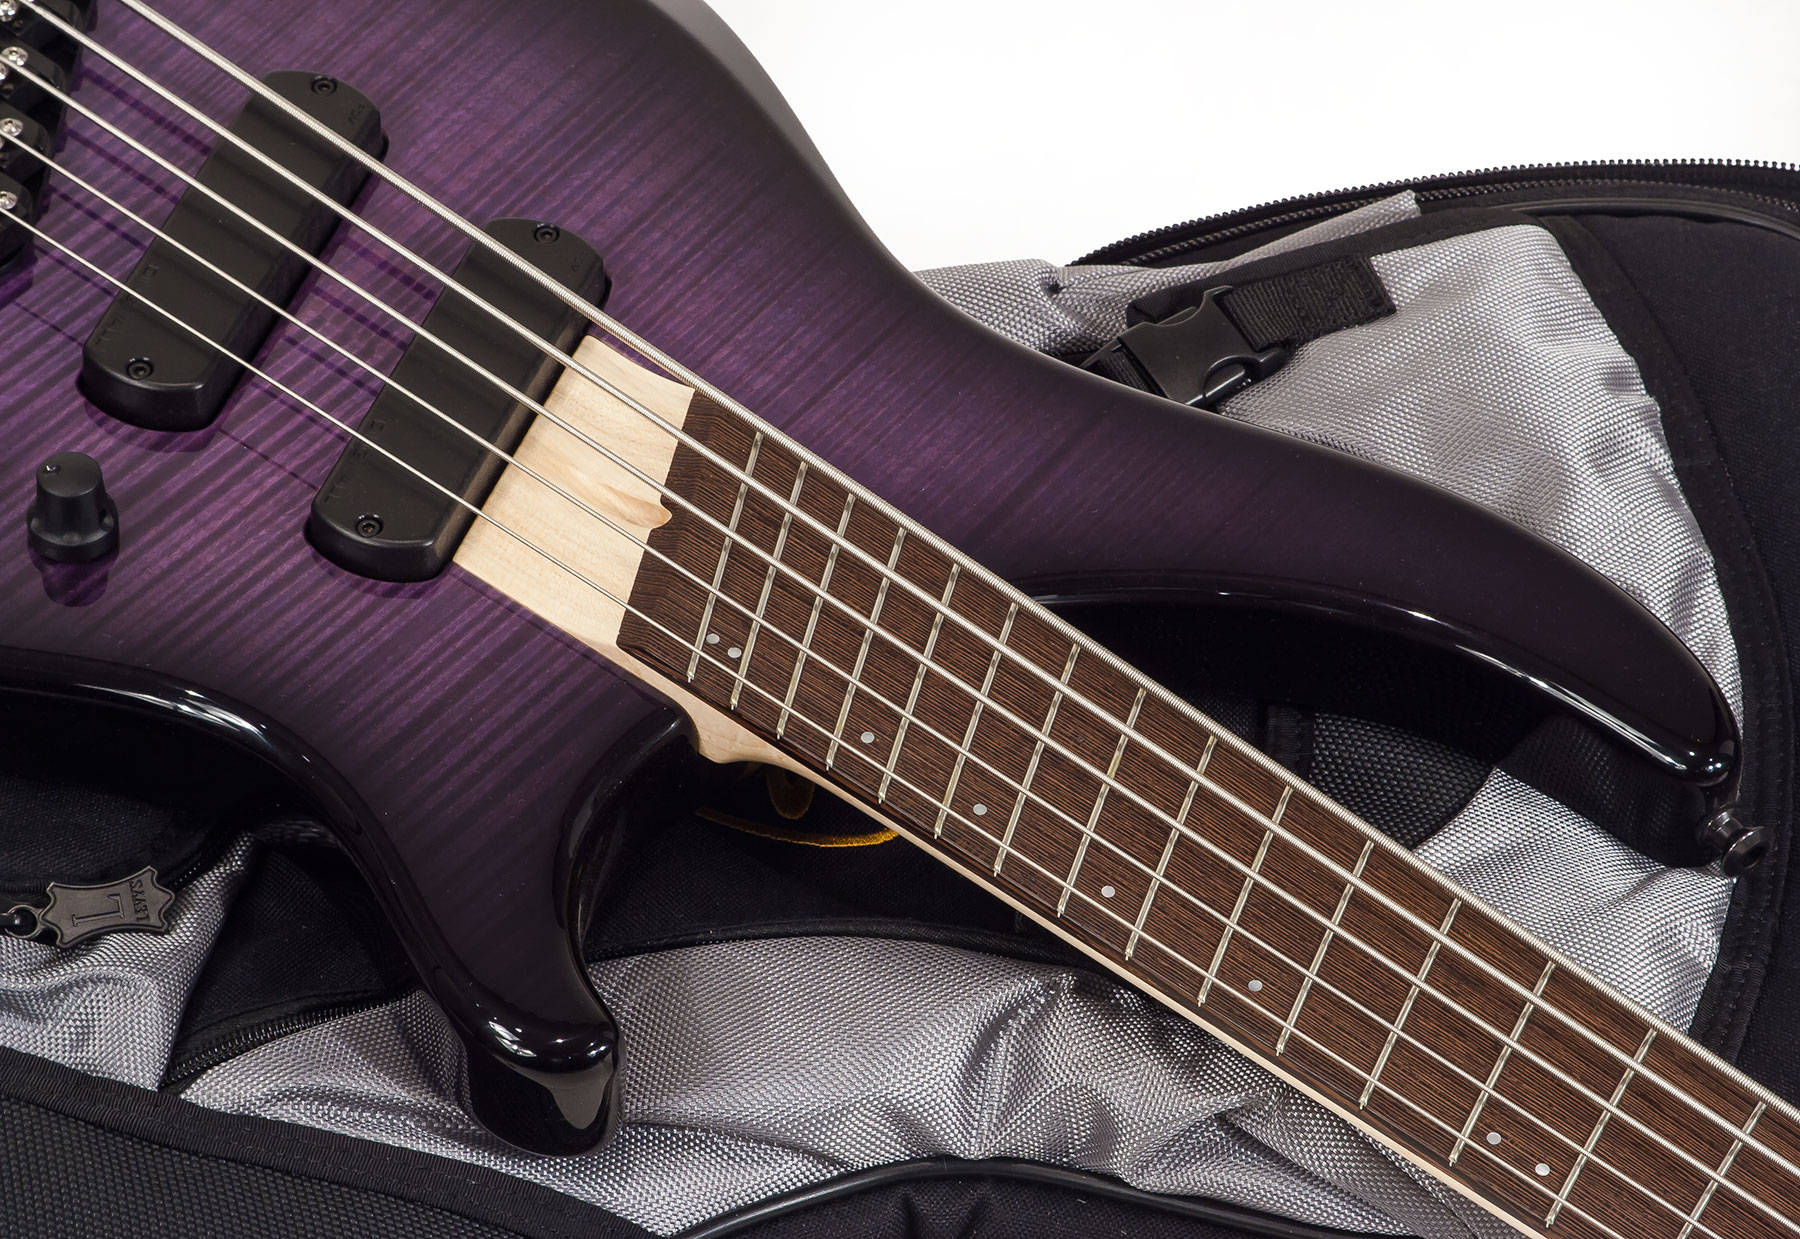 Dingwall Afterburner I 5 2-pickups Wen +housse - Purple Blackburst - Solid body electric bass - Variation 2